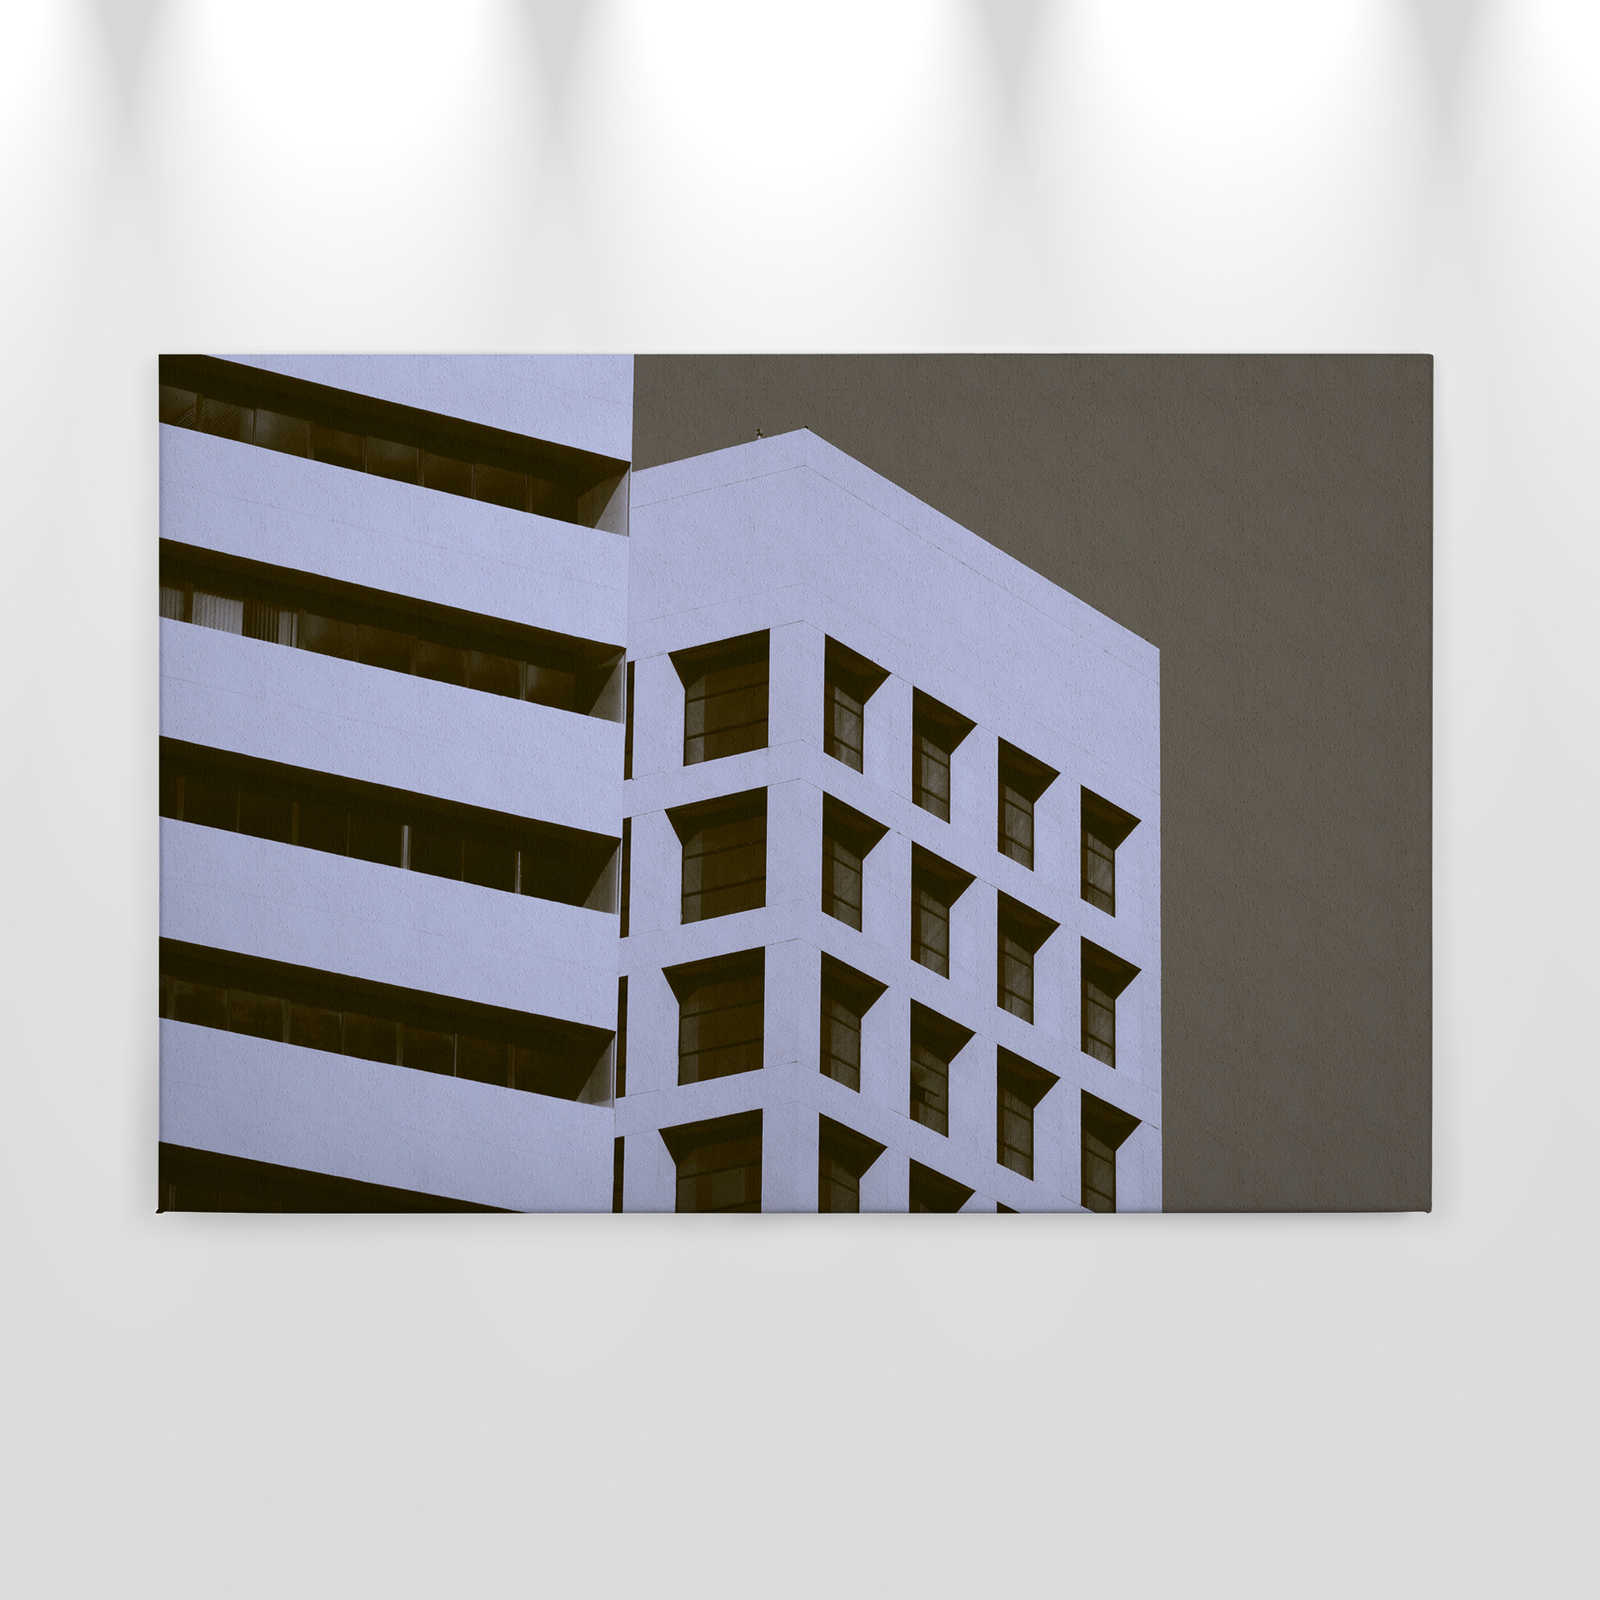             Wolkenkrabber 1 - Canvas schilderij met gebouw in retro look in ruwbouw - 0.90 m x 0.60 m
        